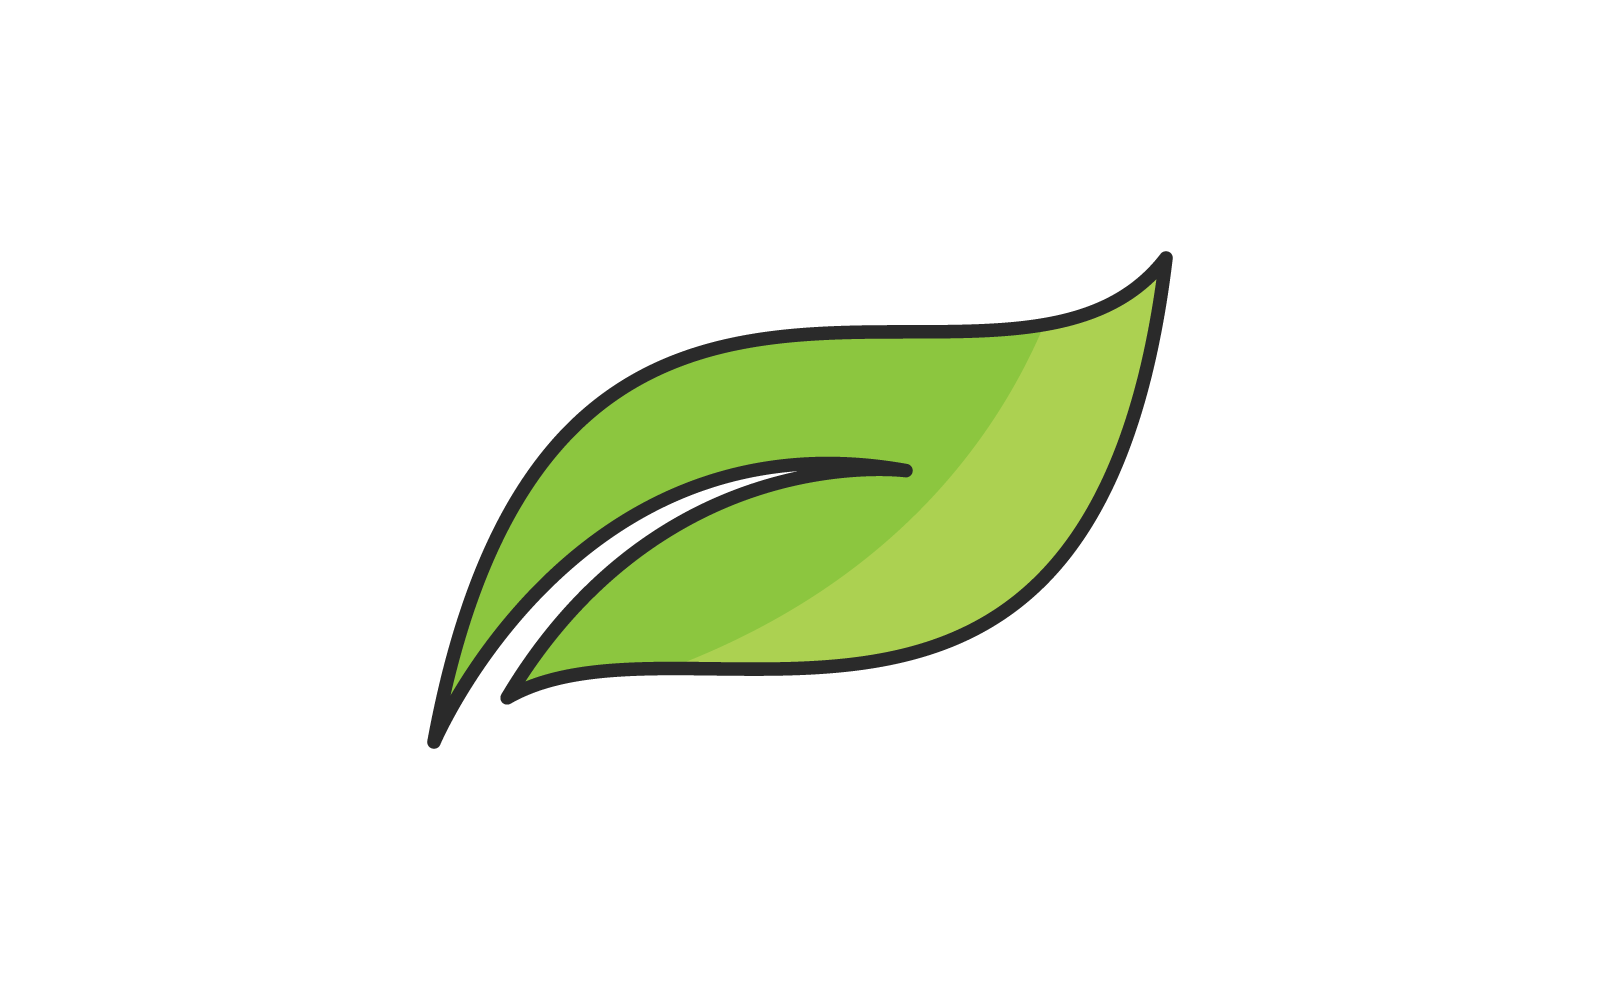 Green leaf illustration nature logo flat design vector template